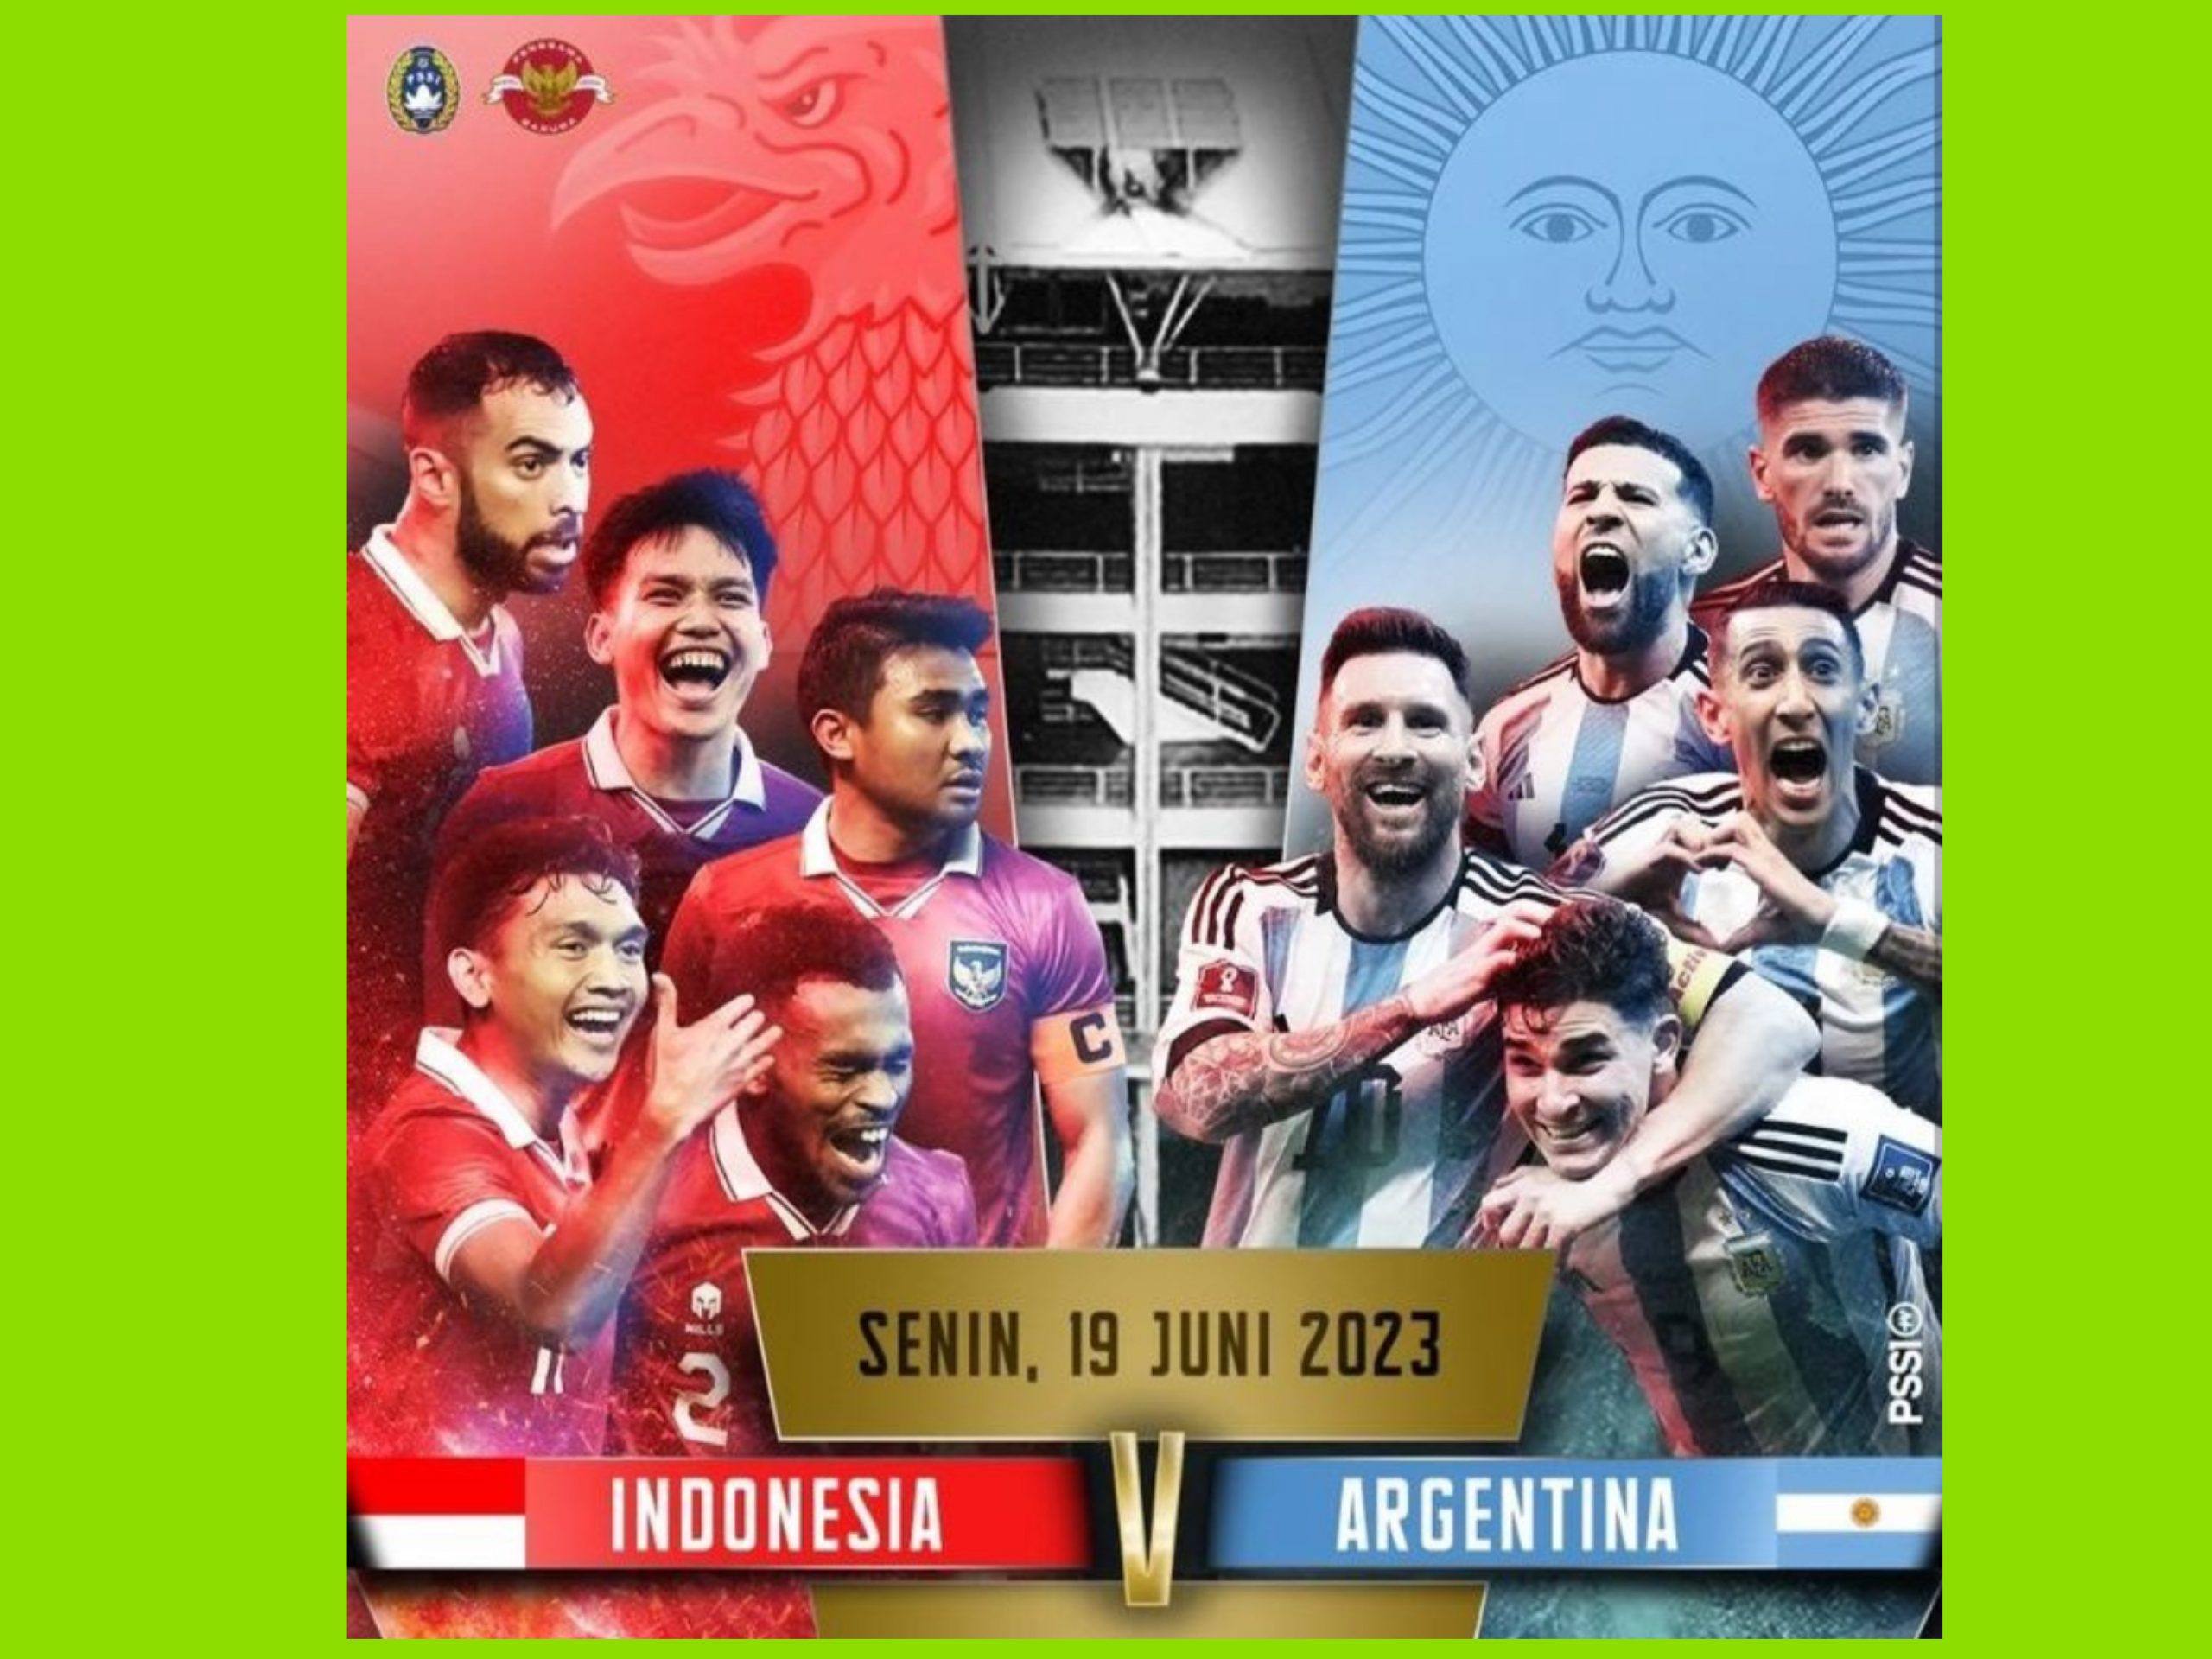 Jadwal Penjualan Tiket Indonesia Vs Argentina, Harga Mulai Rp 600 Ribu